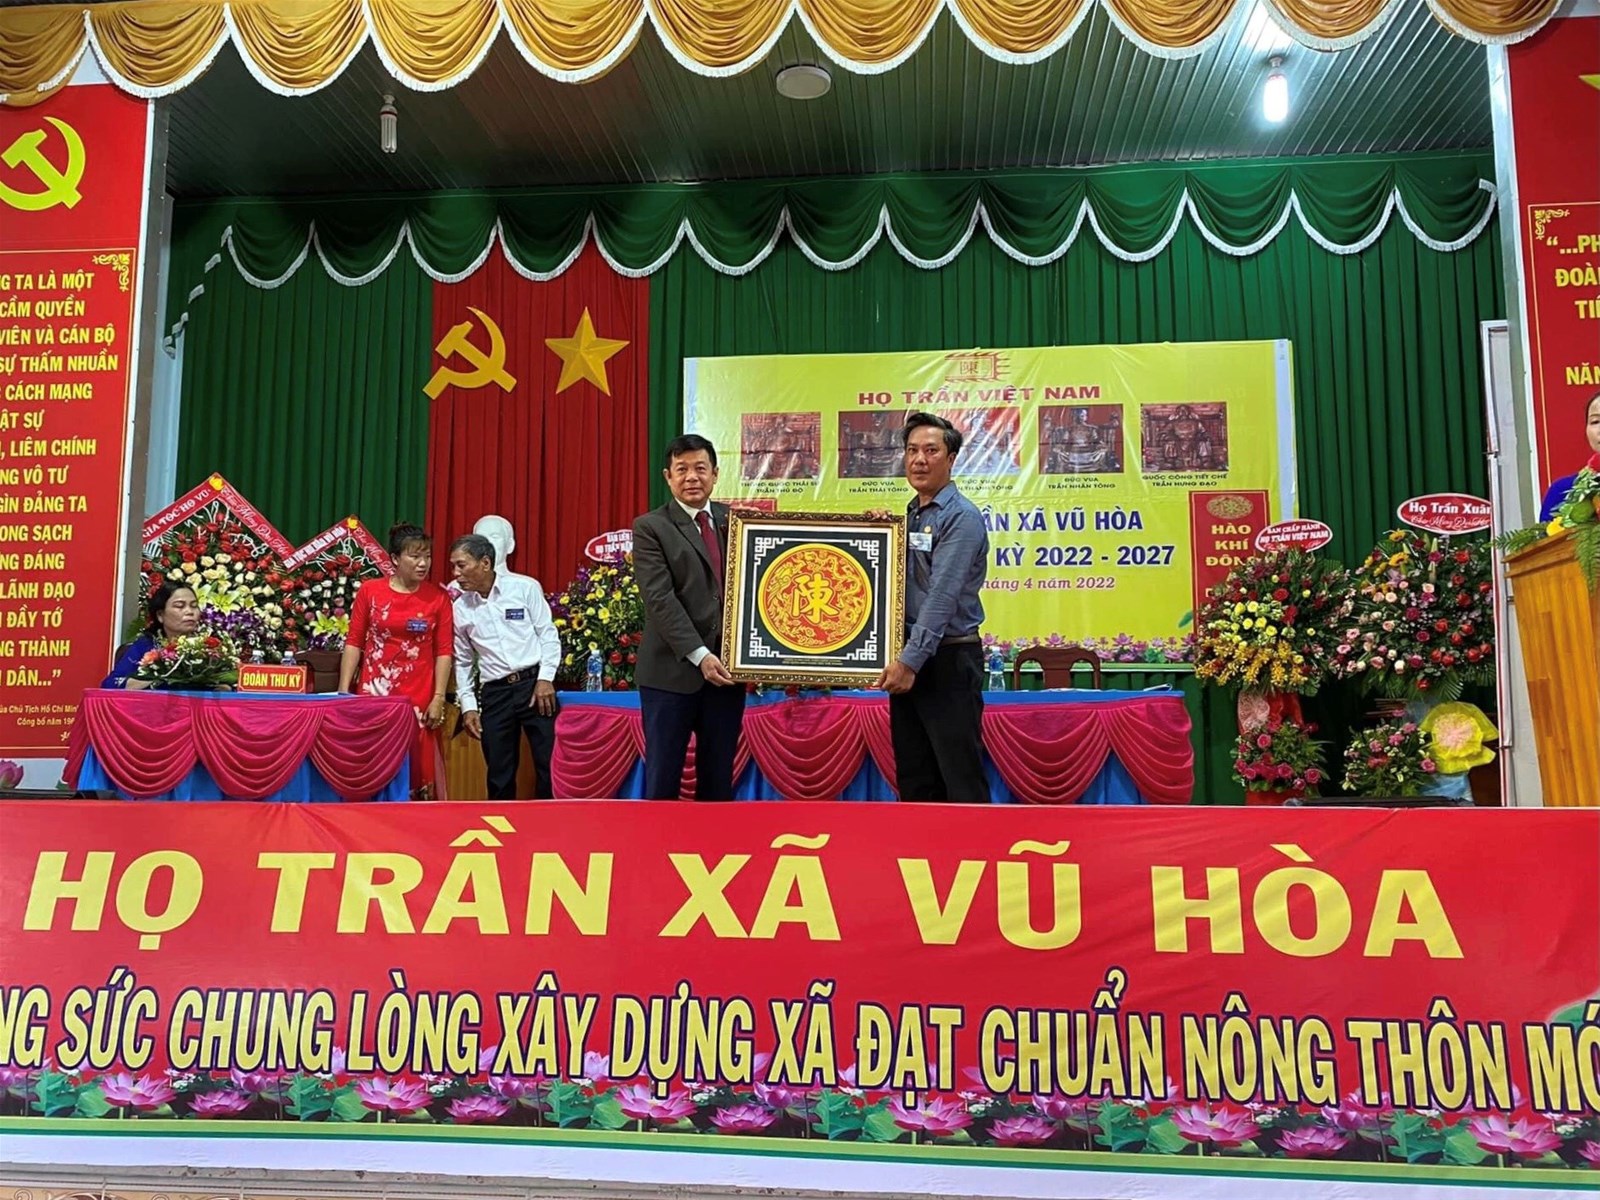 Đại hội họ Trần Việt Nam xã Vũ Hòa lần thứ nhất nhiệm kỳ 2022 - 2027